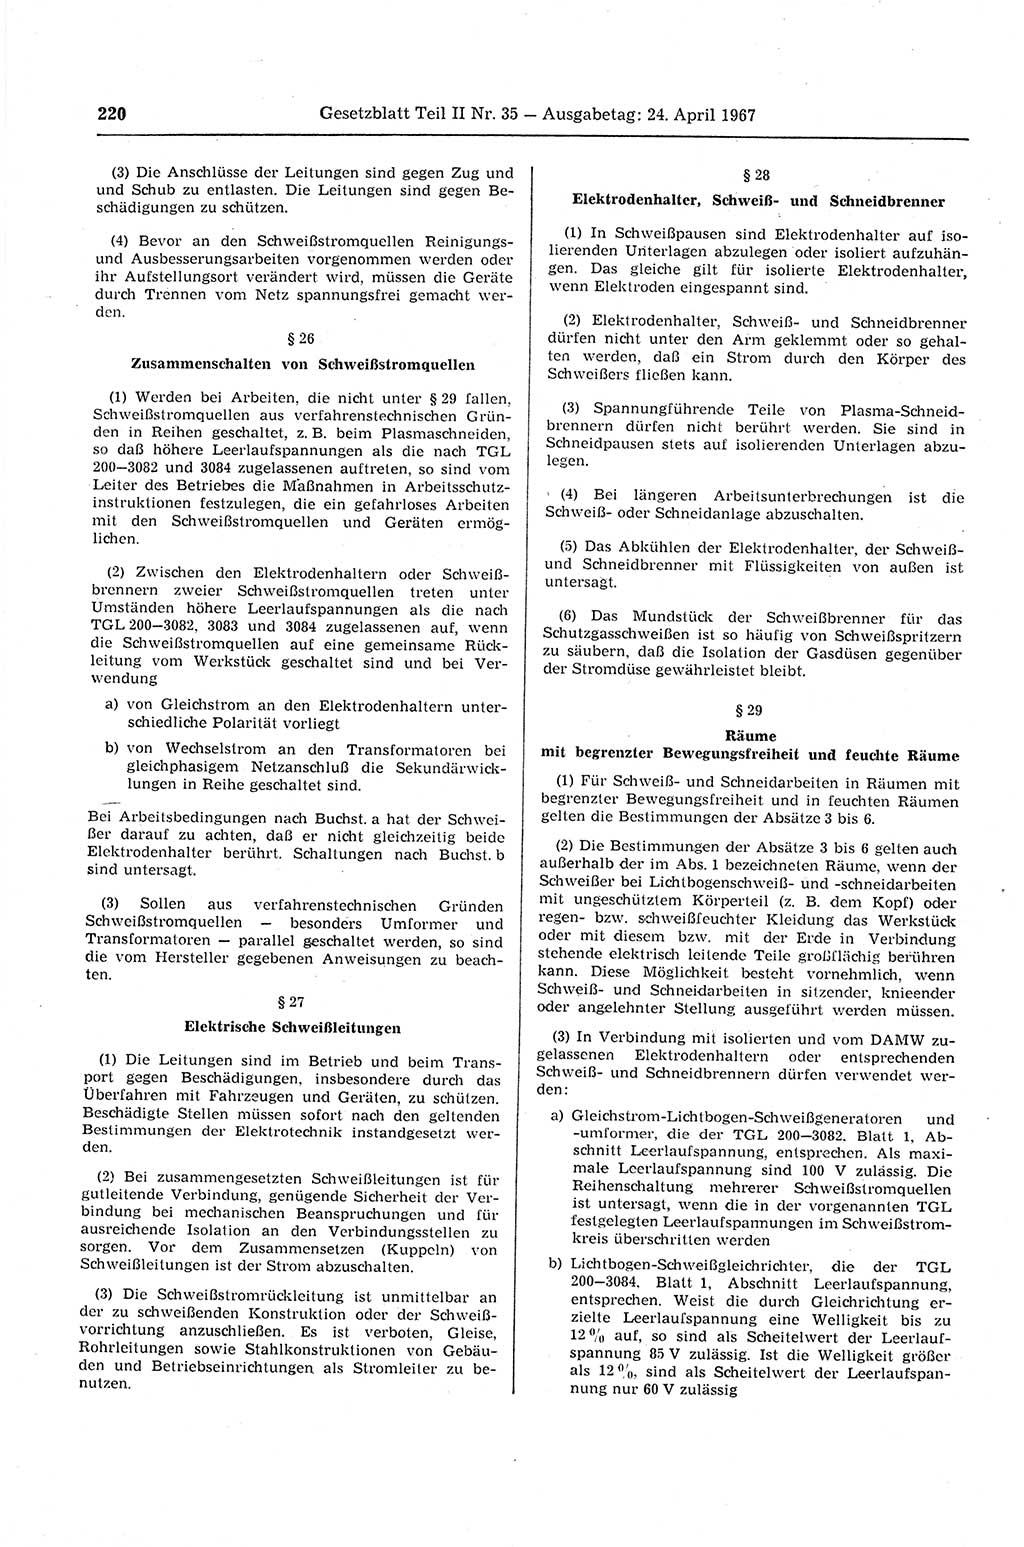 Gesetzblatt (GBl.) der Deutschen Demokratischen Republik (DDR) Teil ⅠⅠ 1967, Seite 220 (GBl. DDR ⅠⅠ 1967, S. 220)